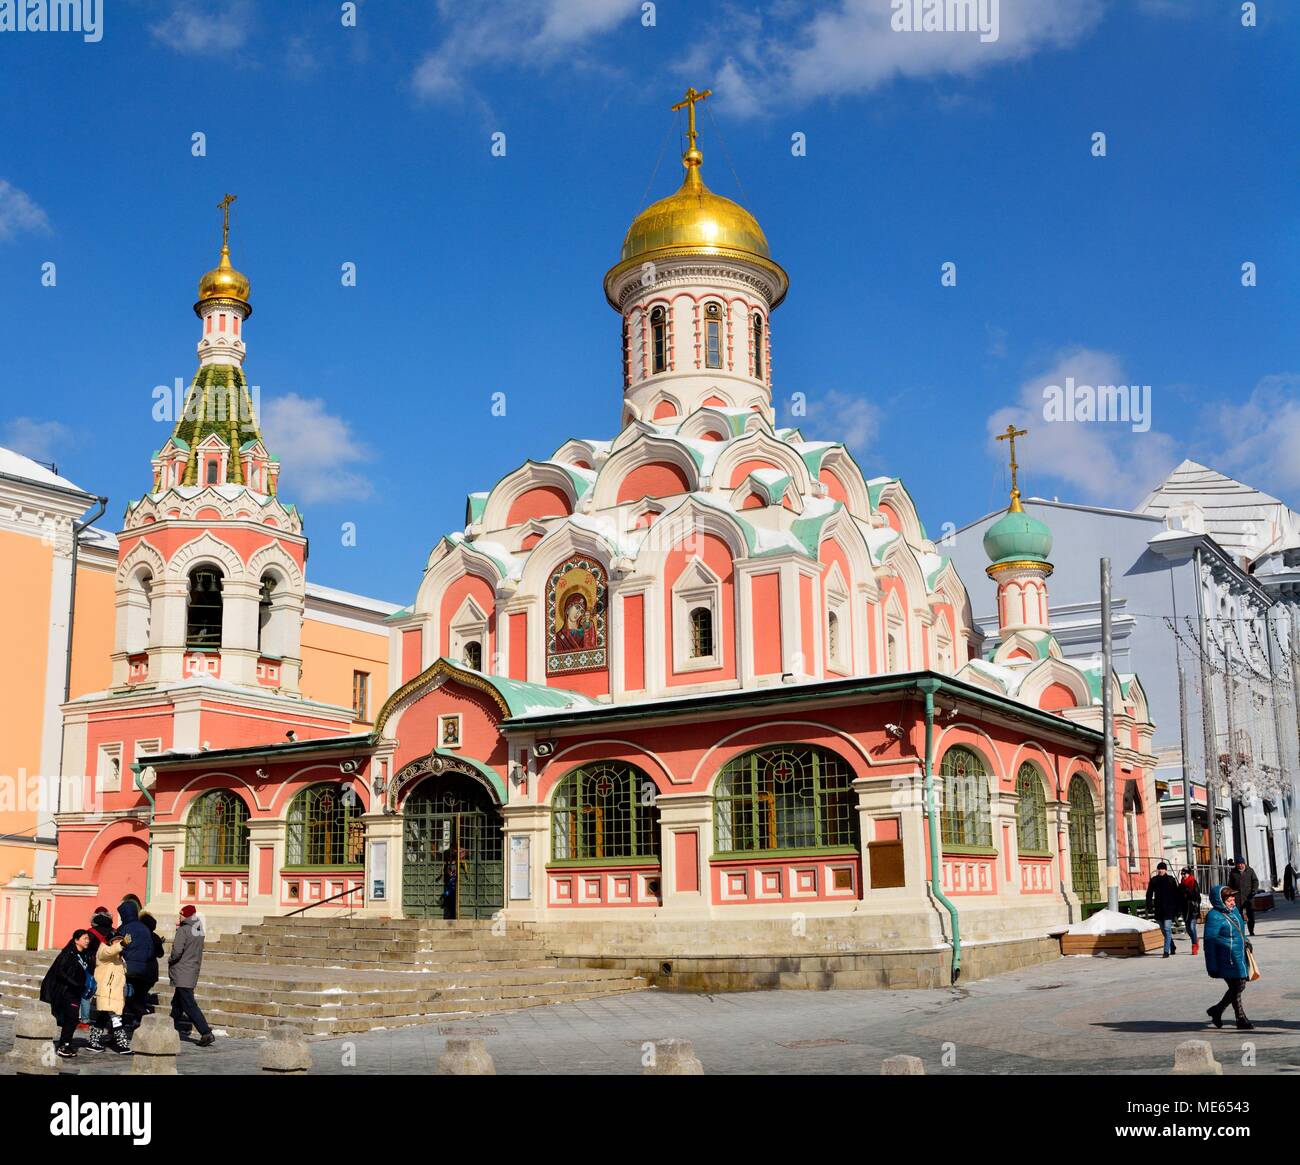 Moscou, Russie - le 17 mars 2018. Vue extérieure de la Cathédrale de Kazan à Moscou, avec les personnes et les bâtiments alentour. Banque D'Images